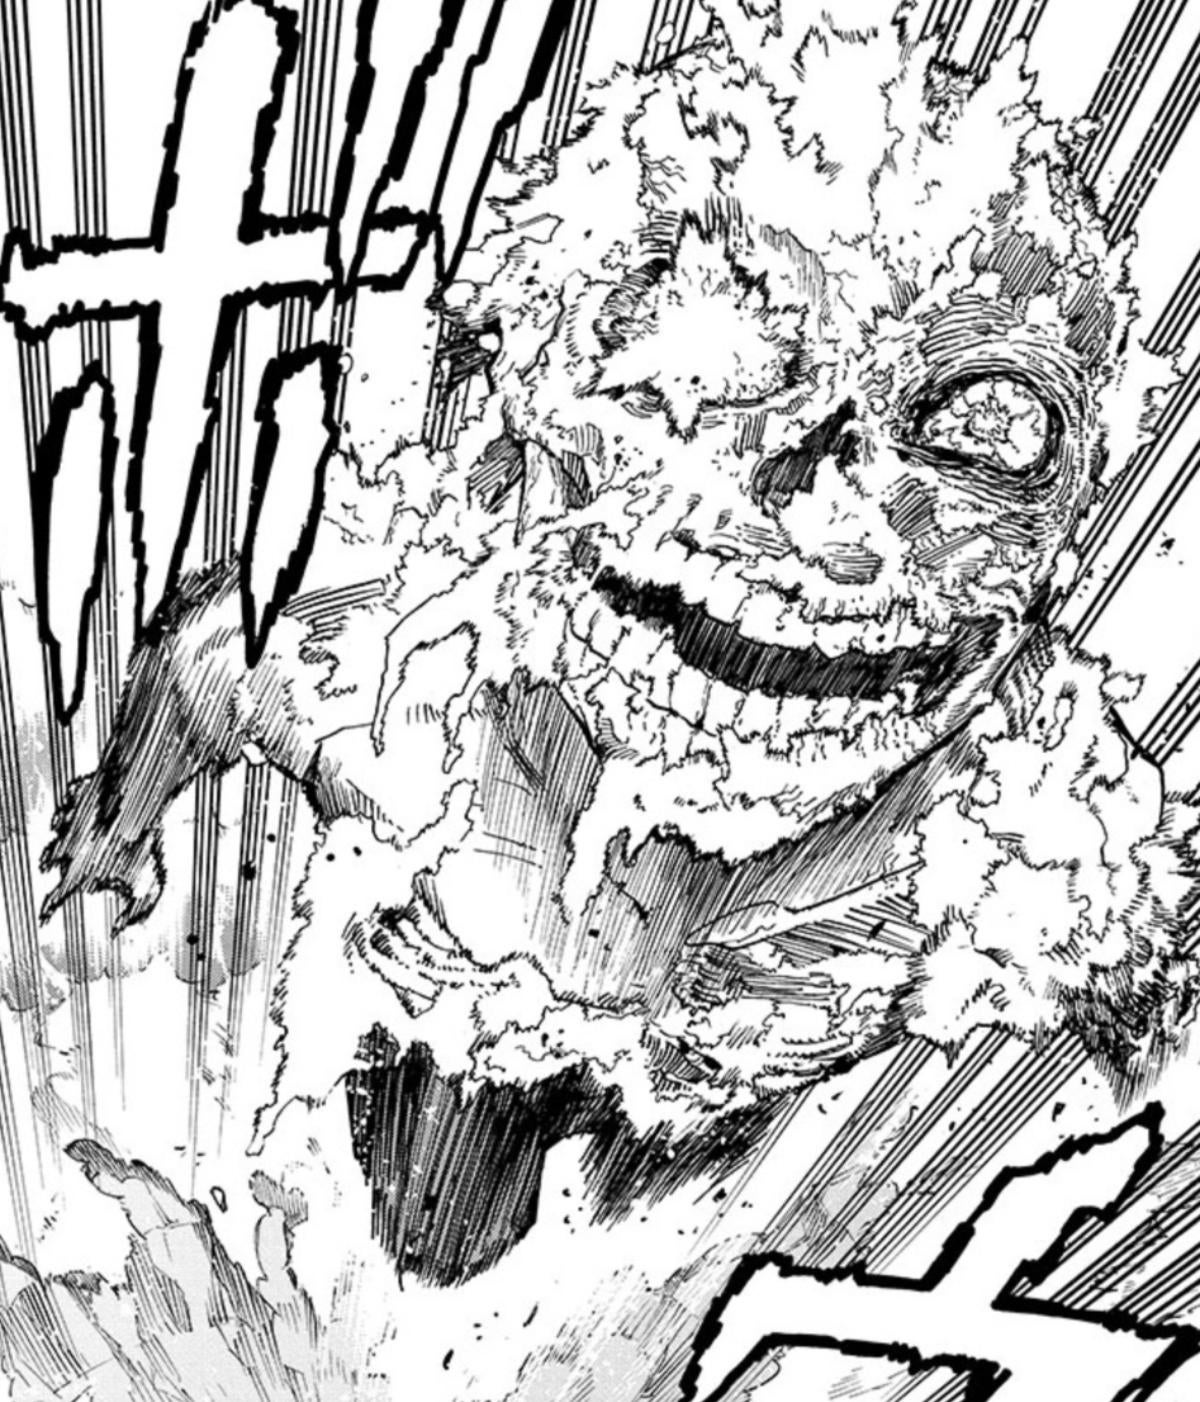 my-hero-academia-shigaraki-most-disturbing-look-yet-manga-spoilers-panel.jpg